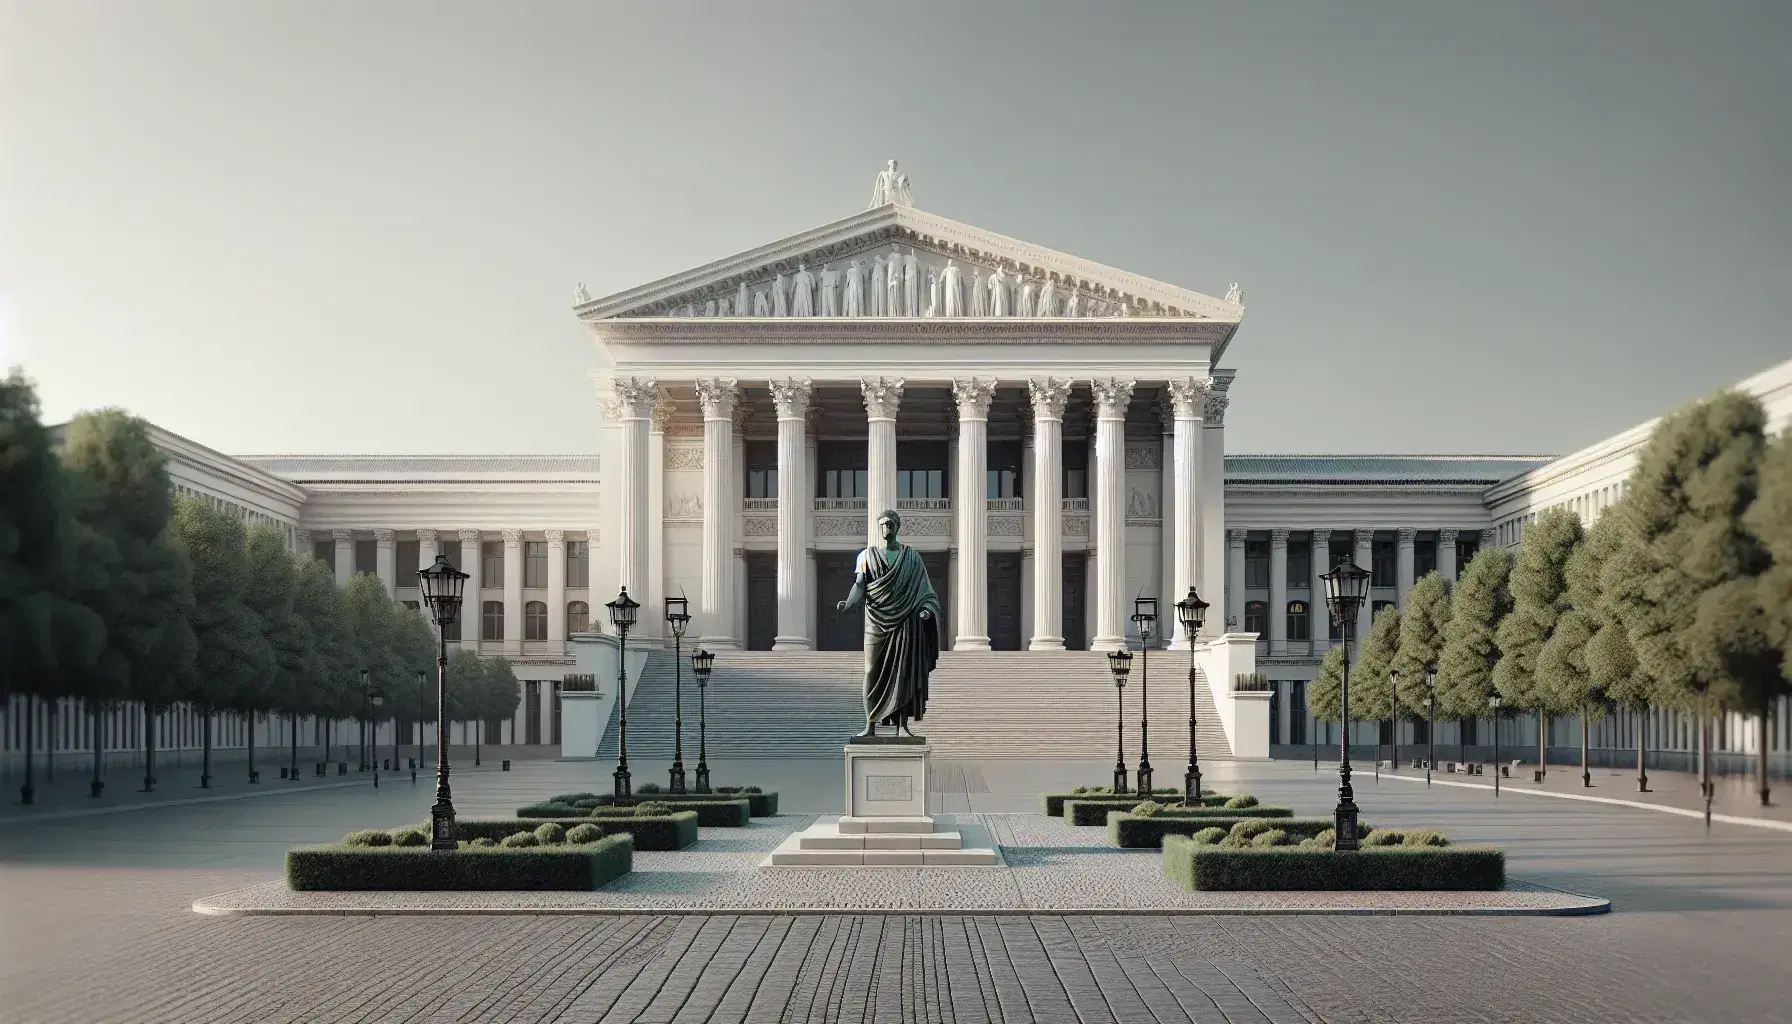 Edificio neoclásico con columnas y frontón triangular, escalinatas al frente, estatua de bronce de hombre en toga y plaza adoquinada bajo cielo azul.